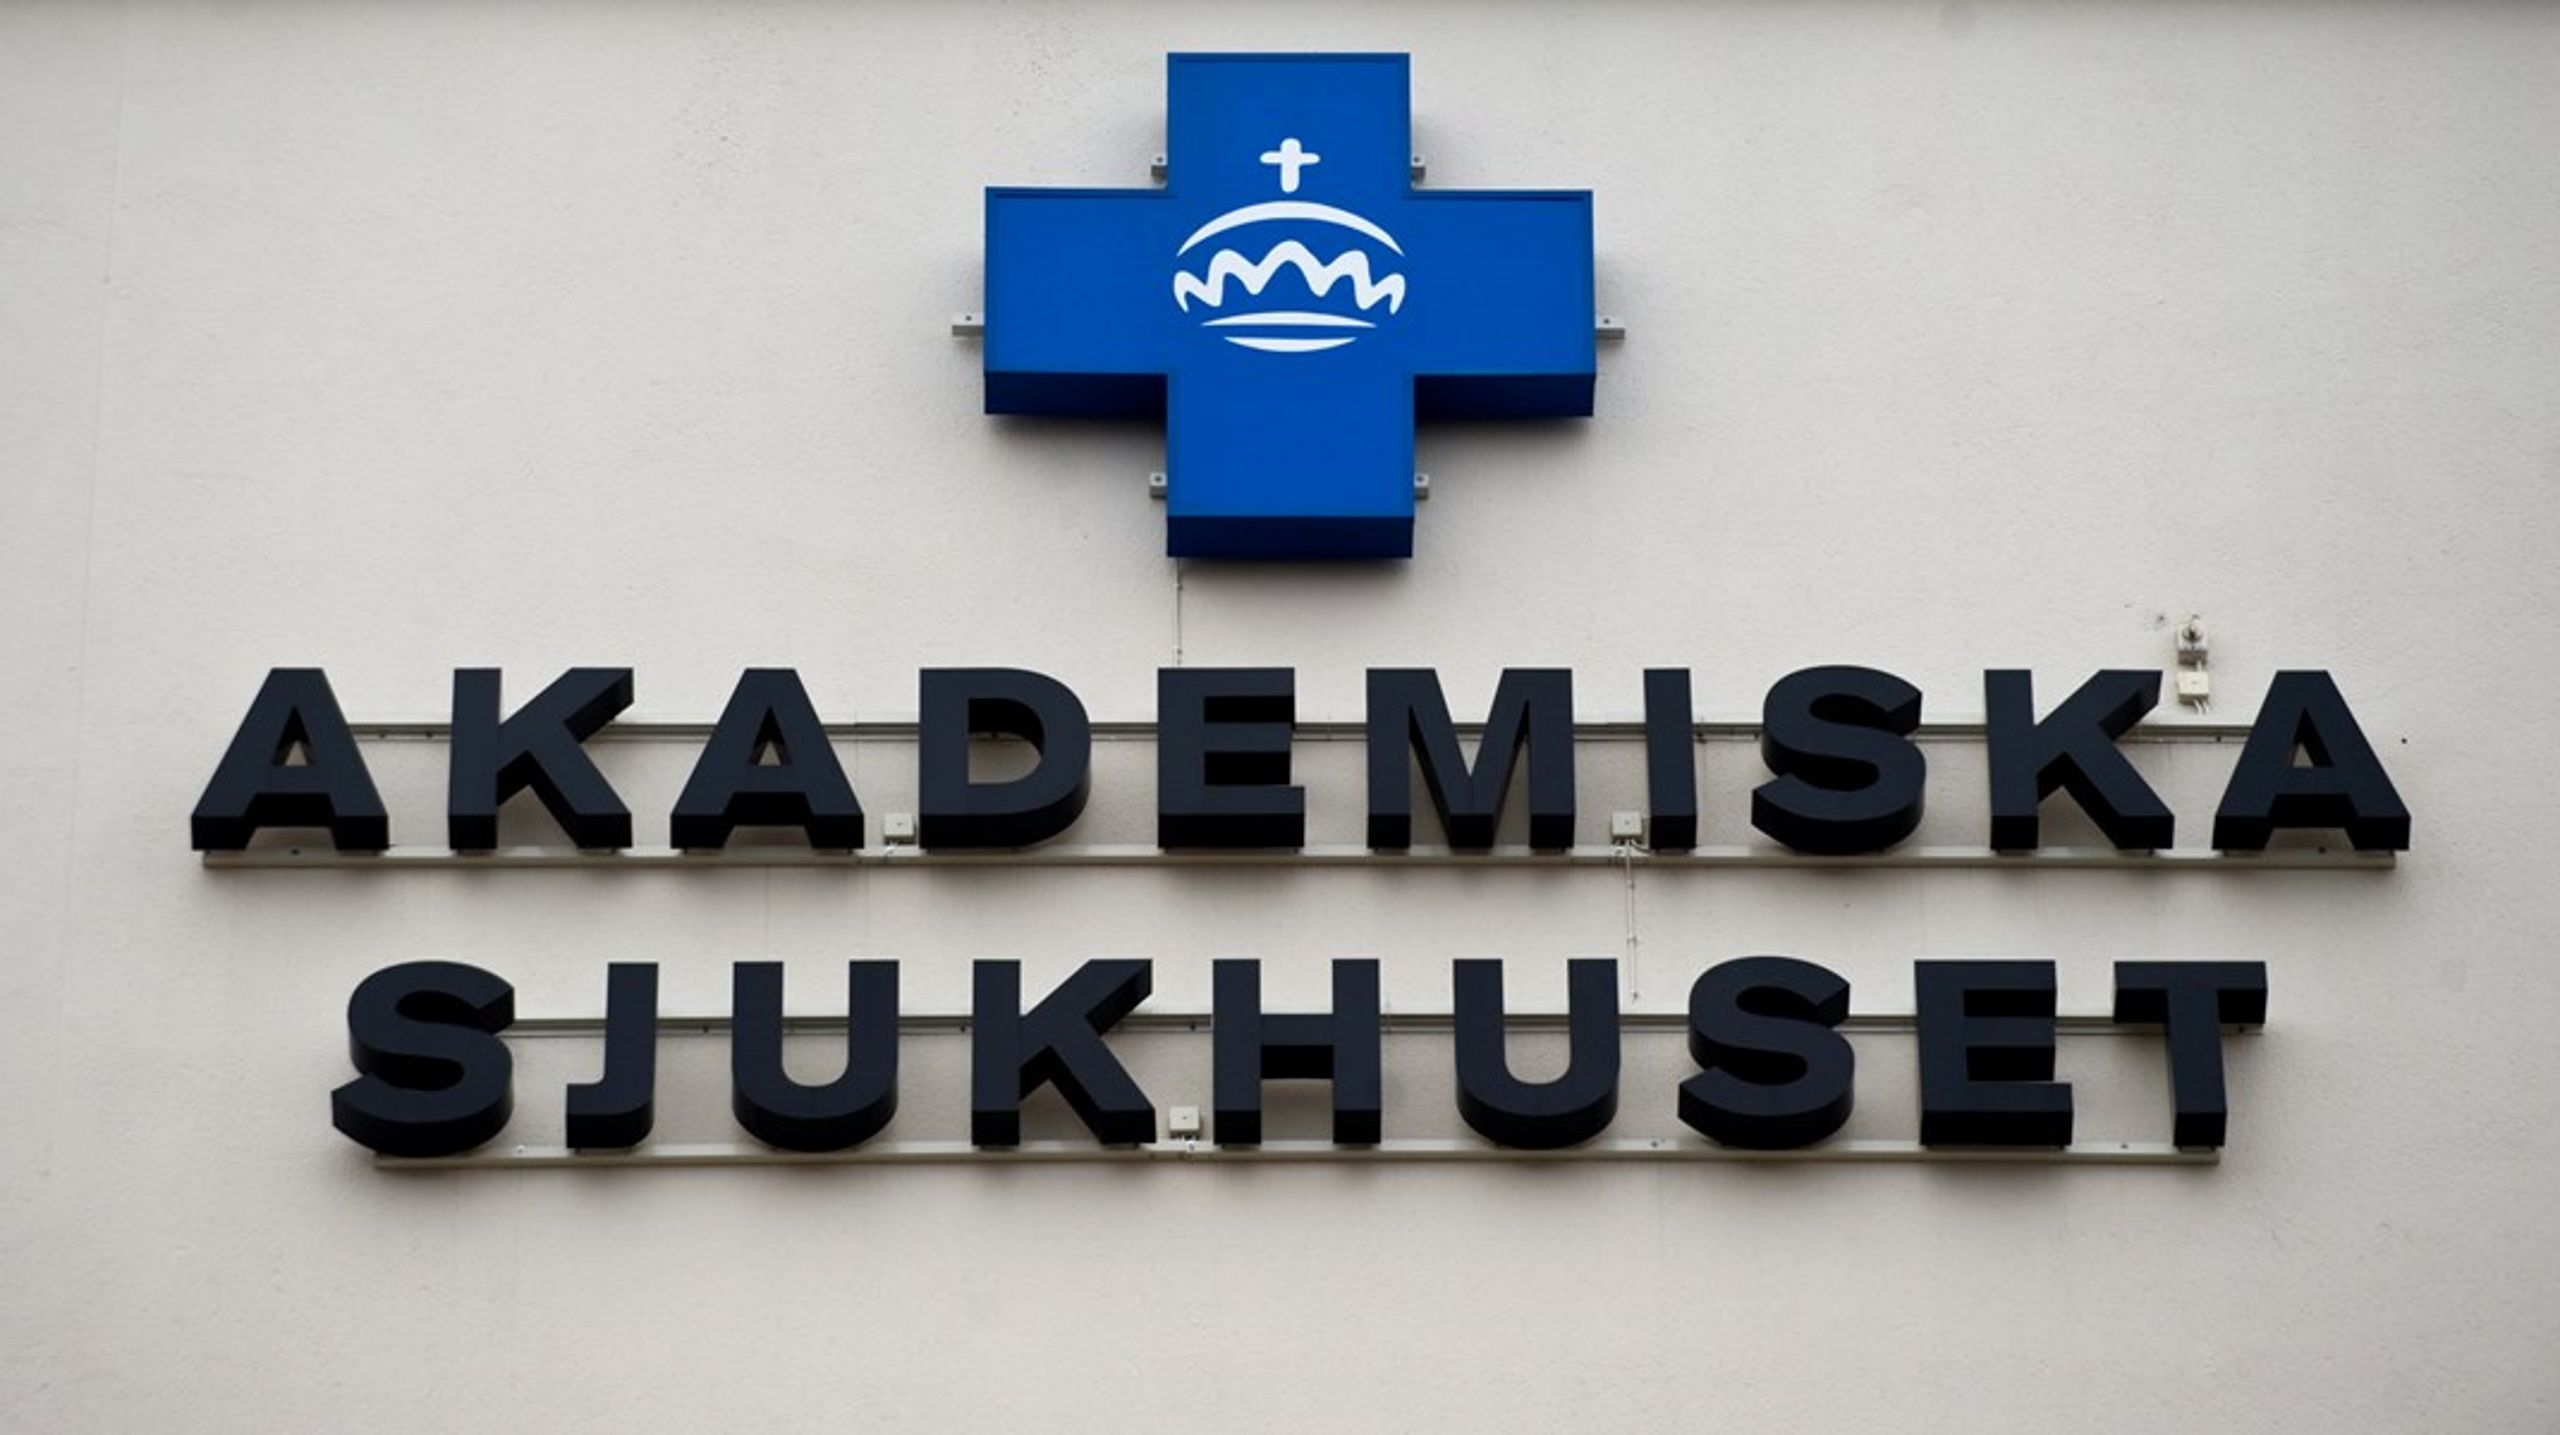 ”För att möta ett växande antal cancerpatienter har Akademiska sjukhuset i Uppsala utforskat möjligheten att förlägga delar av cancervården utanför sjukhusmiljön”, skriver debattörerna.